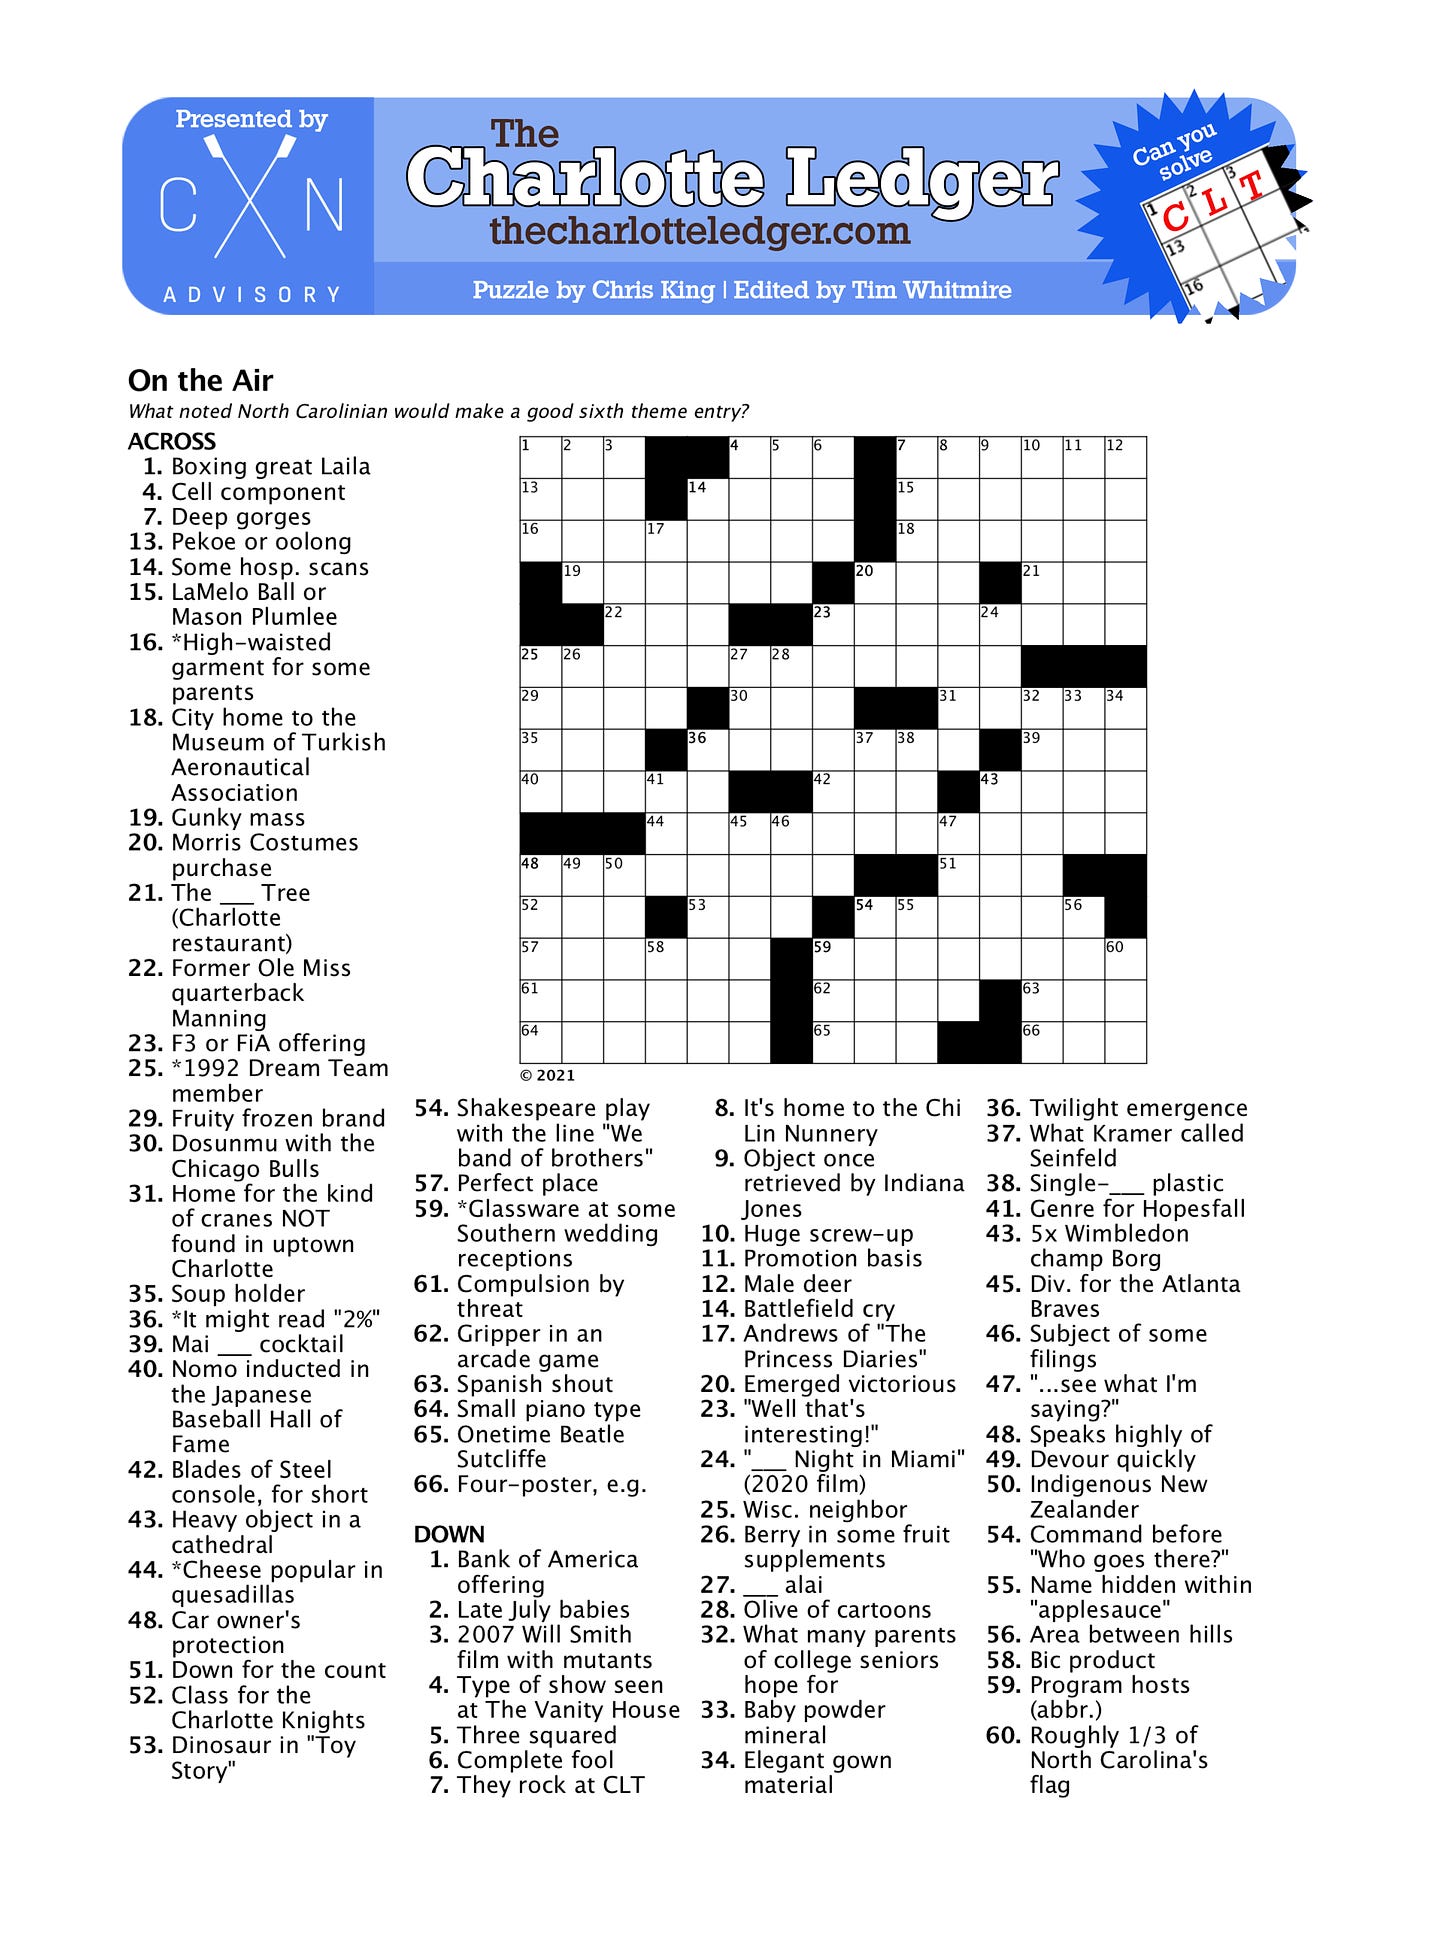 Excitation Crossword Clue